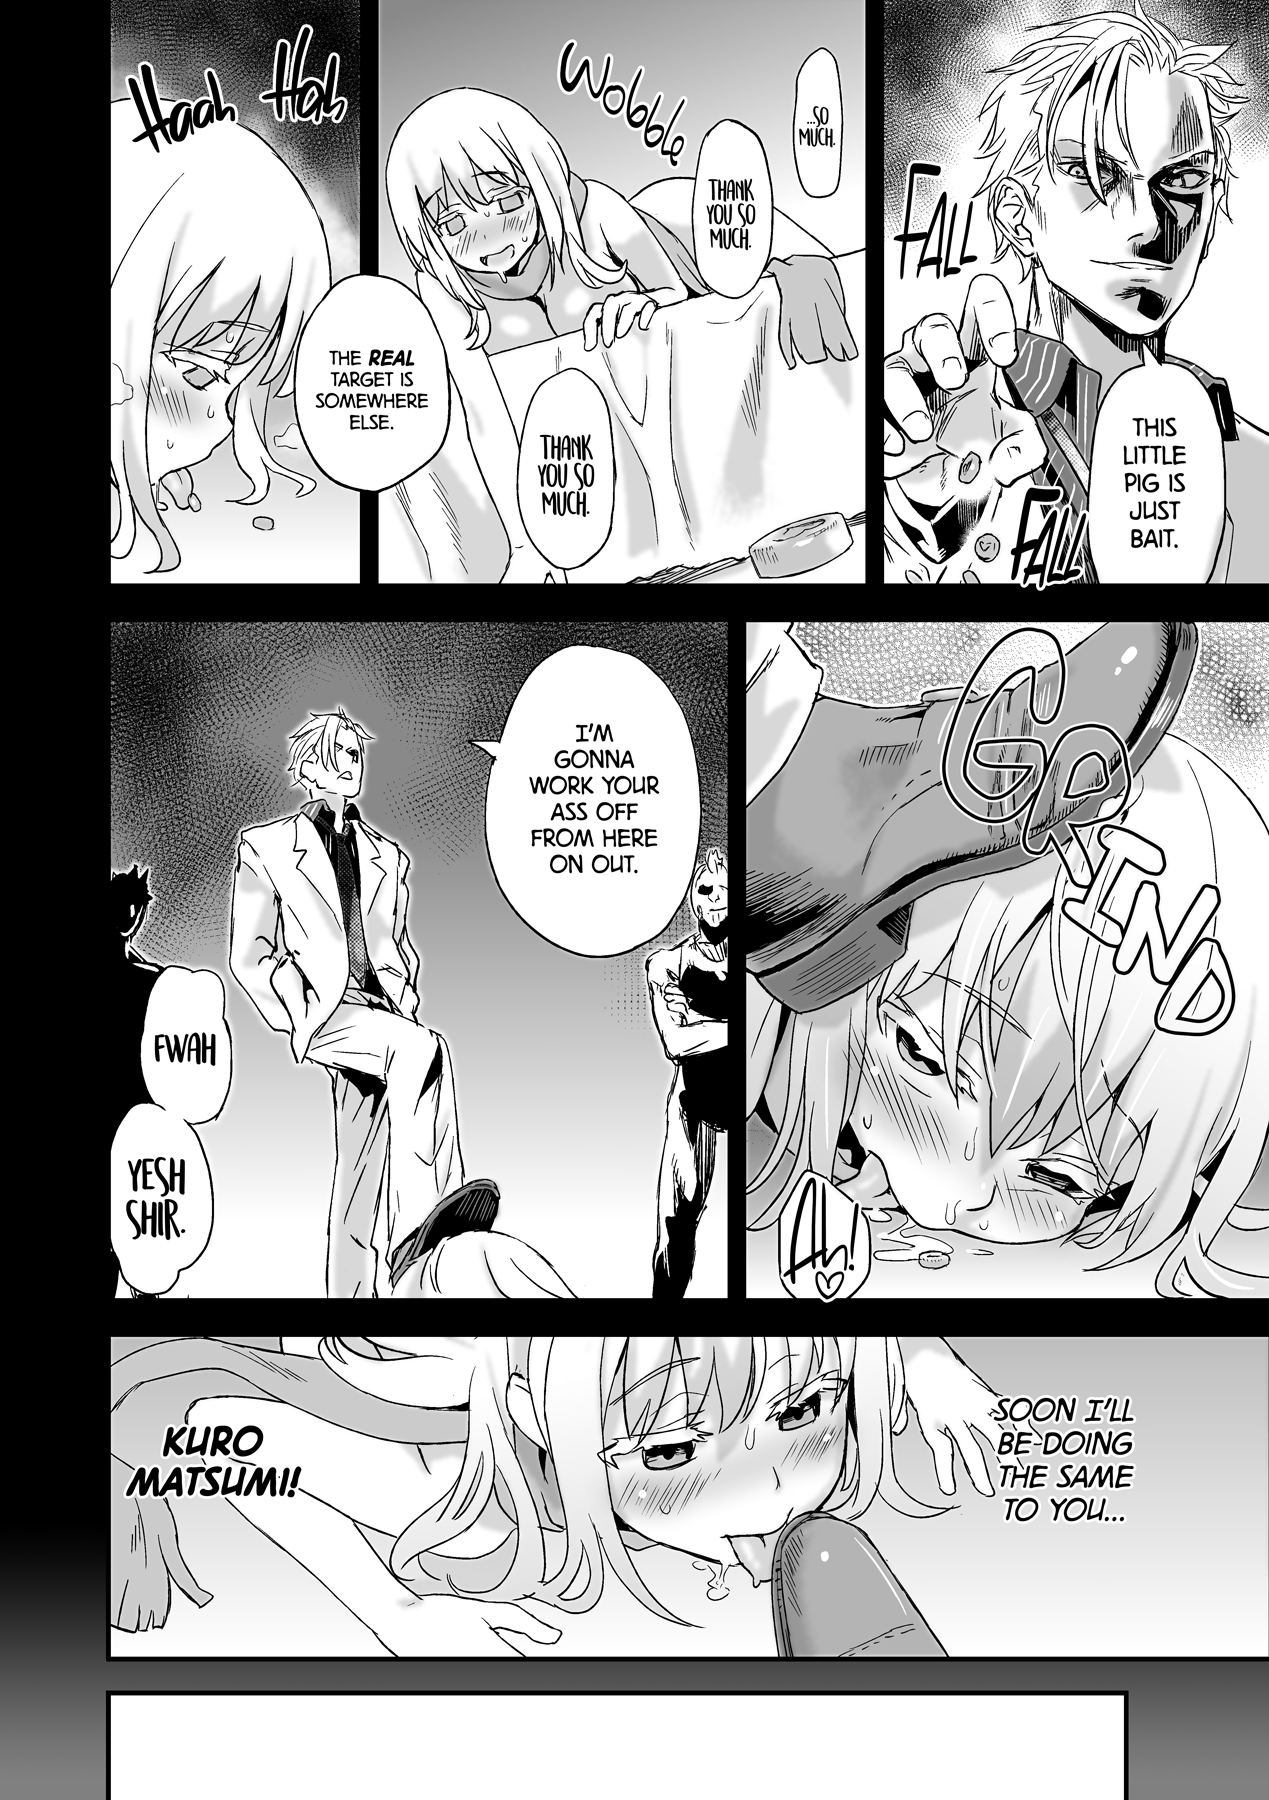 Victim Girls 13 - DRAGON SLAYER hentai manga picture 10